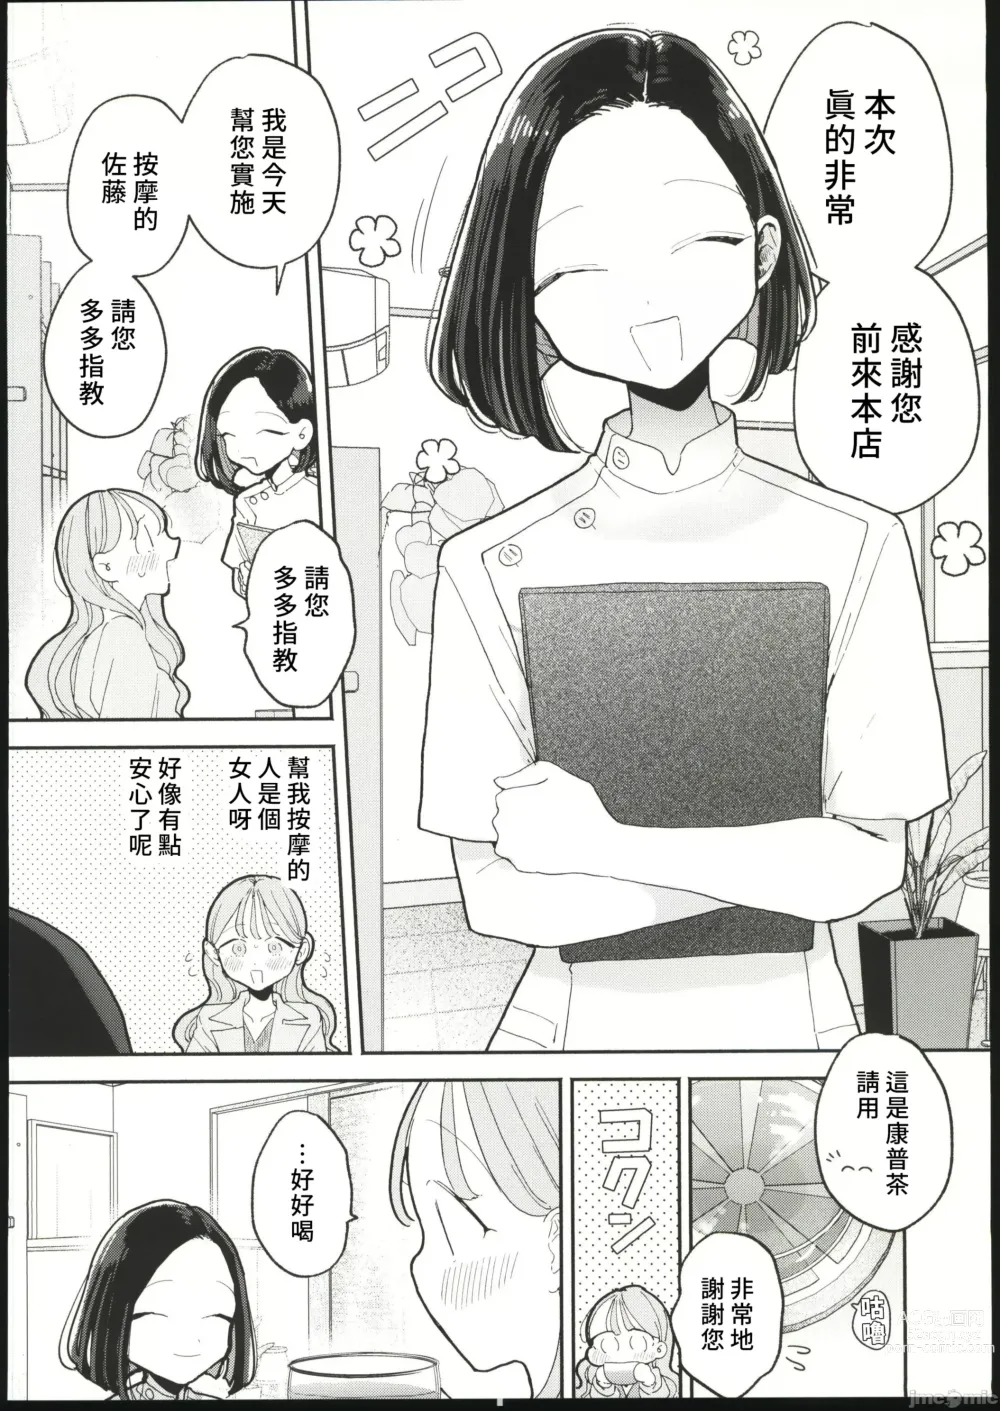 Page 5 of manga 絶頂リフレ 駅前の性感マッサージ店で○○になっちゃう女の子の話